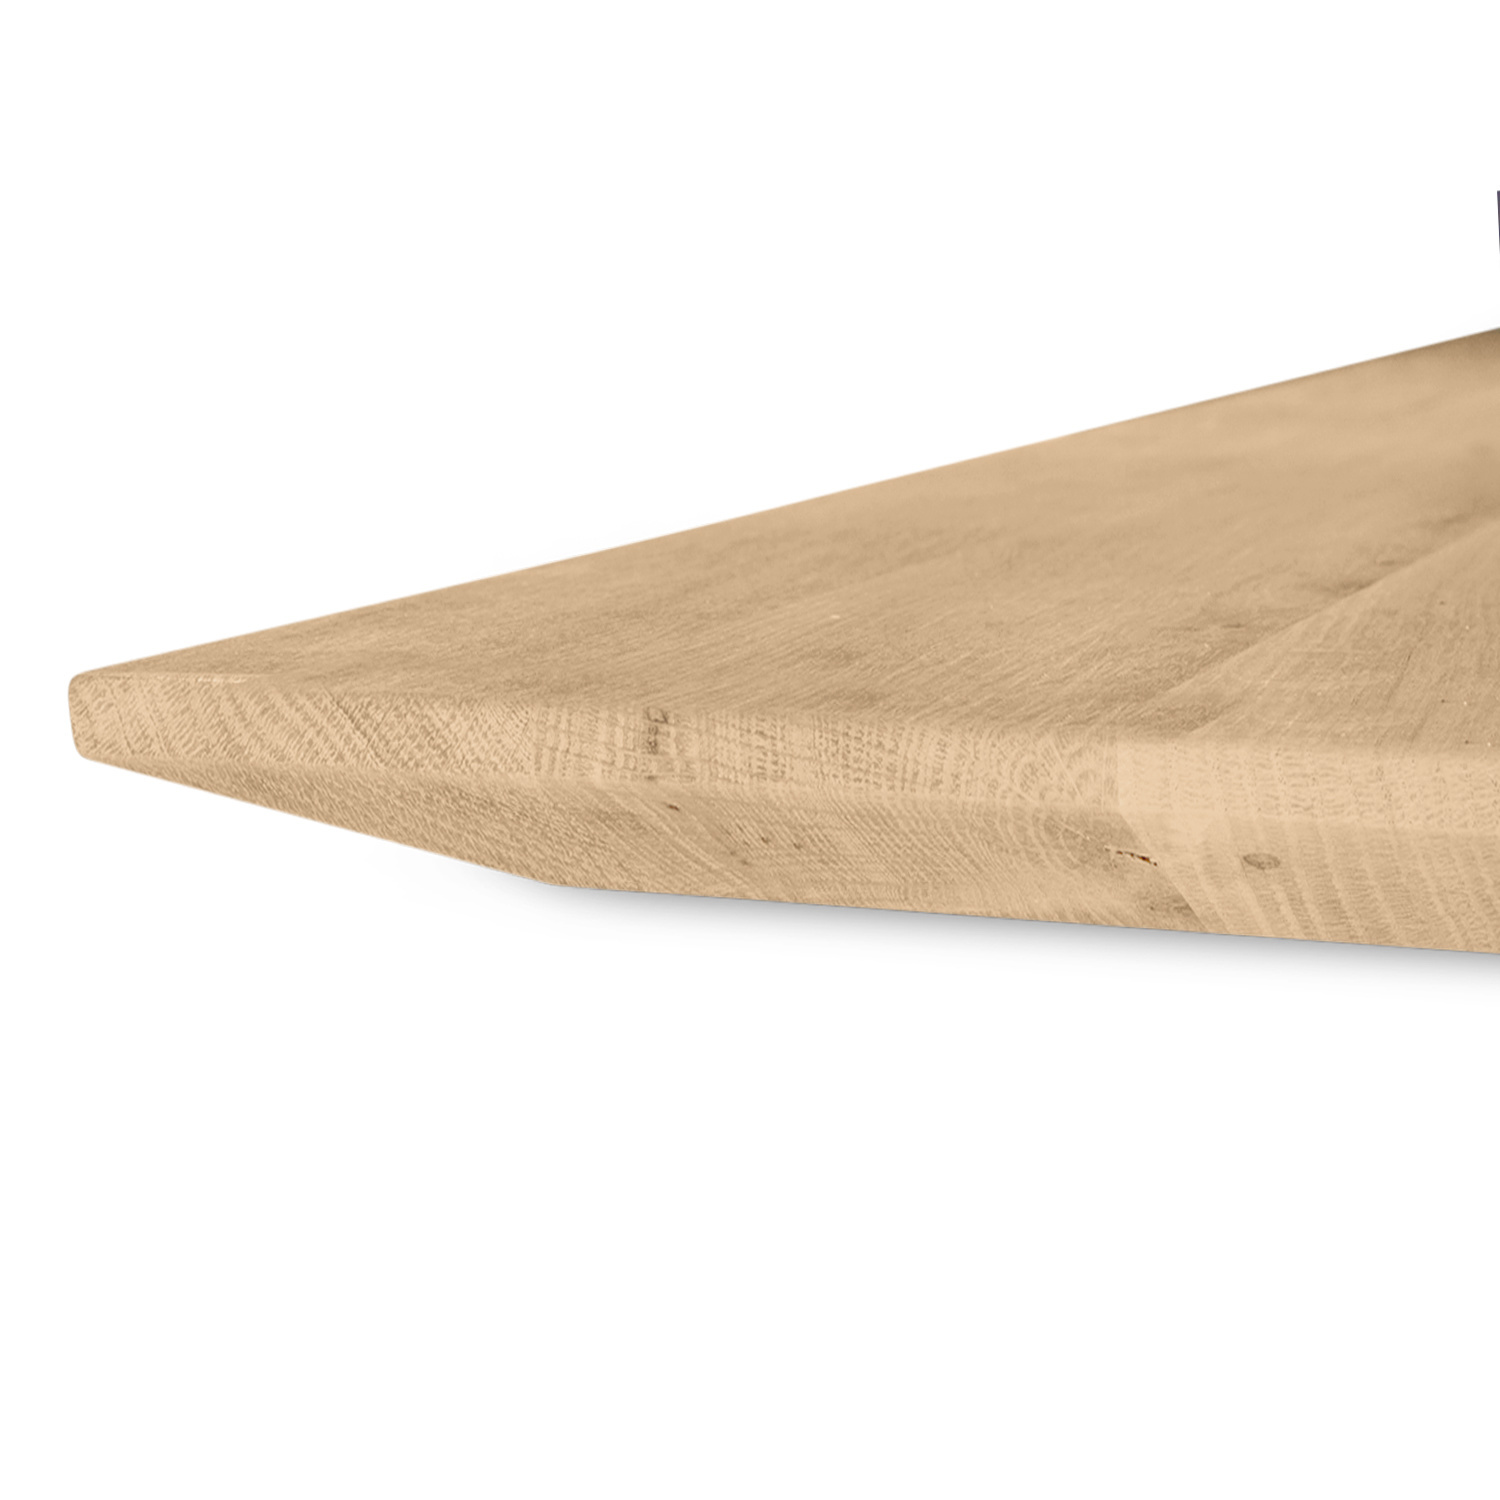  Eiken tafelblad verjongd op maat - 4 cm dik (1-laag) - rustiek Europees eikenhout - met brede lamellen (circa 10-12 cm) - verlijmd kd 8-12% - 50-120x50-248 cm